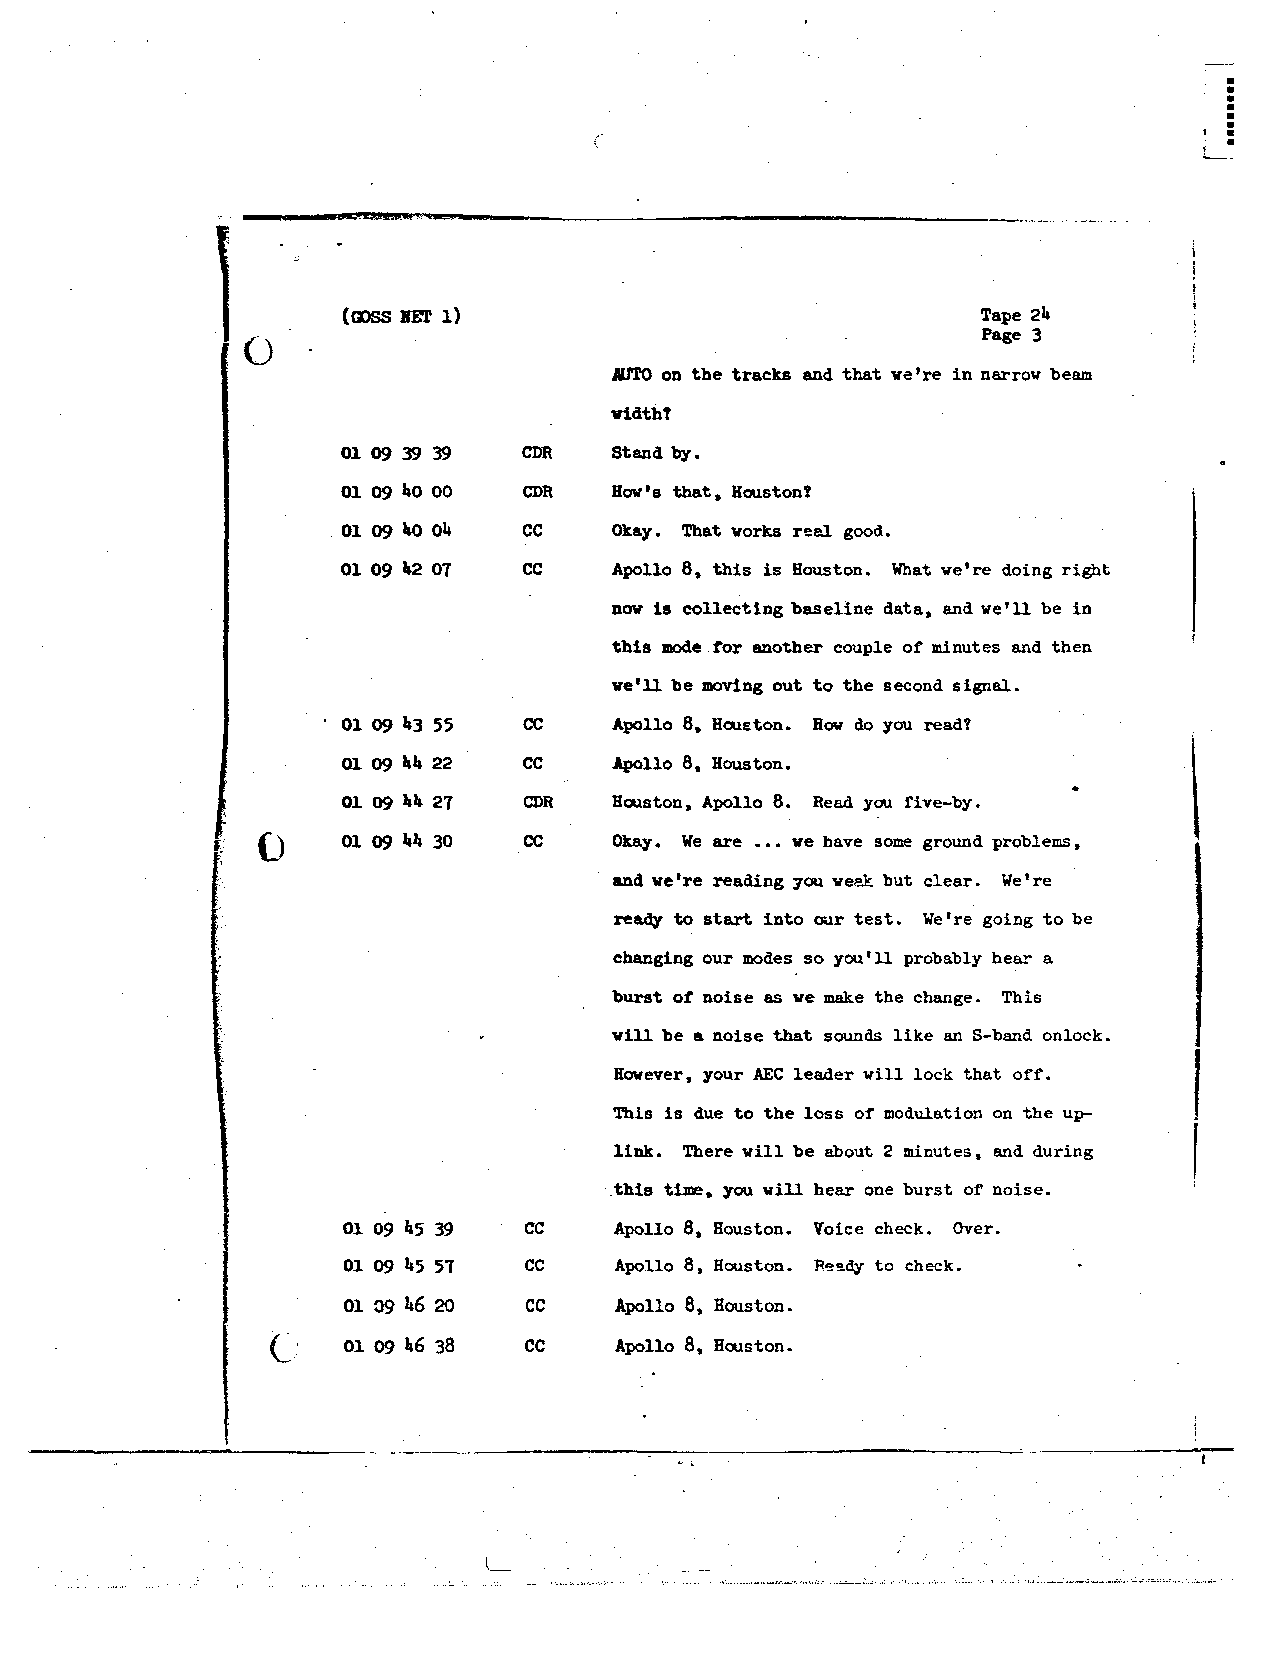 Page 188 of Apollo 8’s original transcript